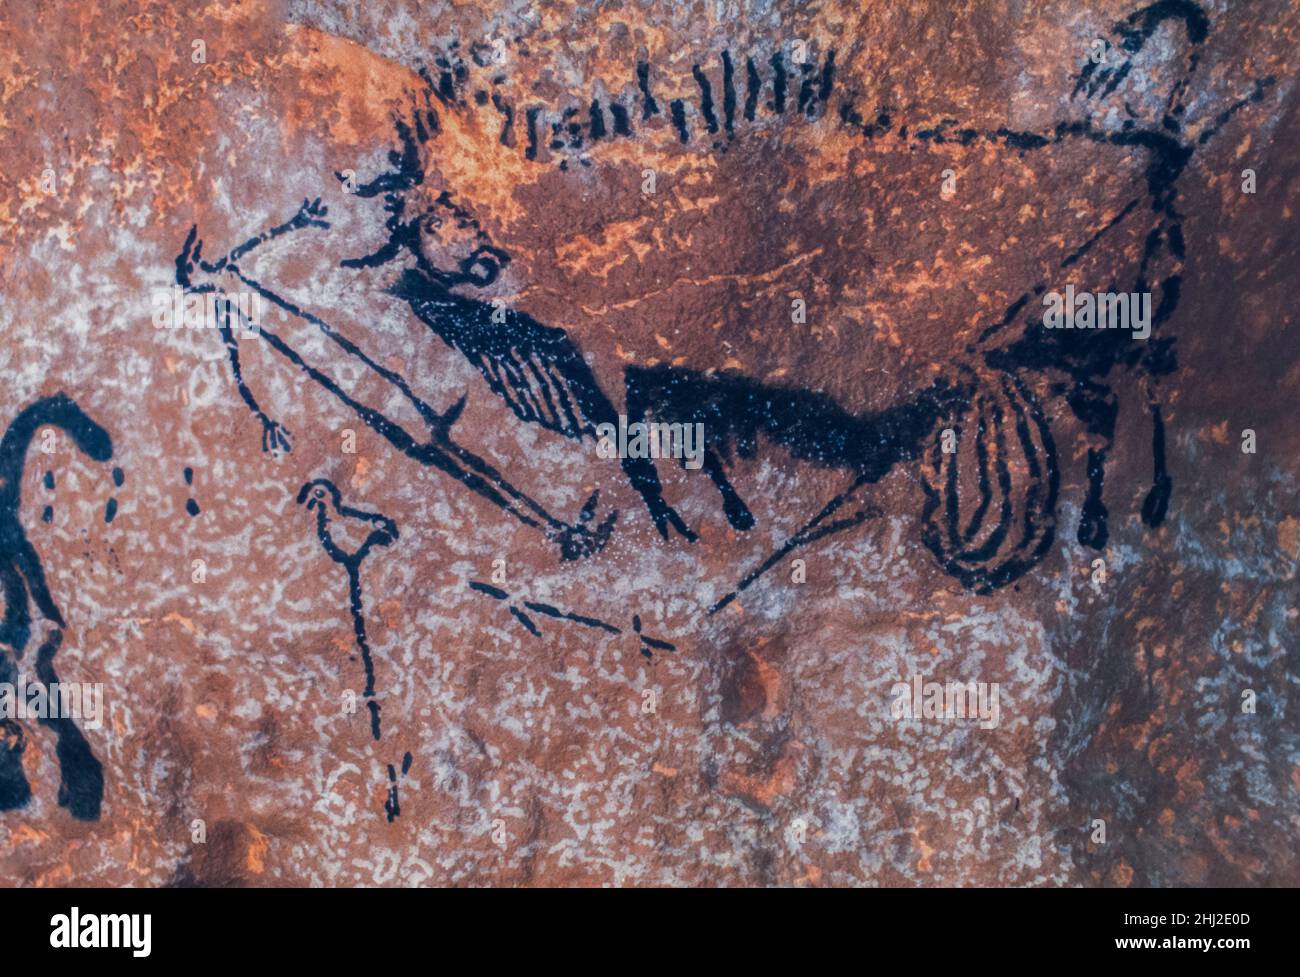 Peintures rupestres à l'âge de pierre de chasseur avec des lances et auroch, maintenant disparu taureau sauvage, grottes de Lascaux, Périgord, Montignac, Dordogne,France Banque D'Images